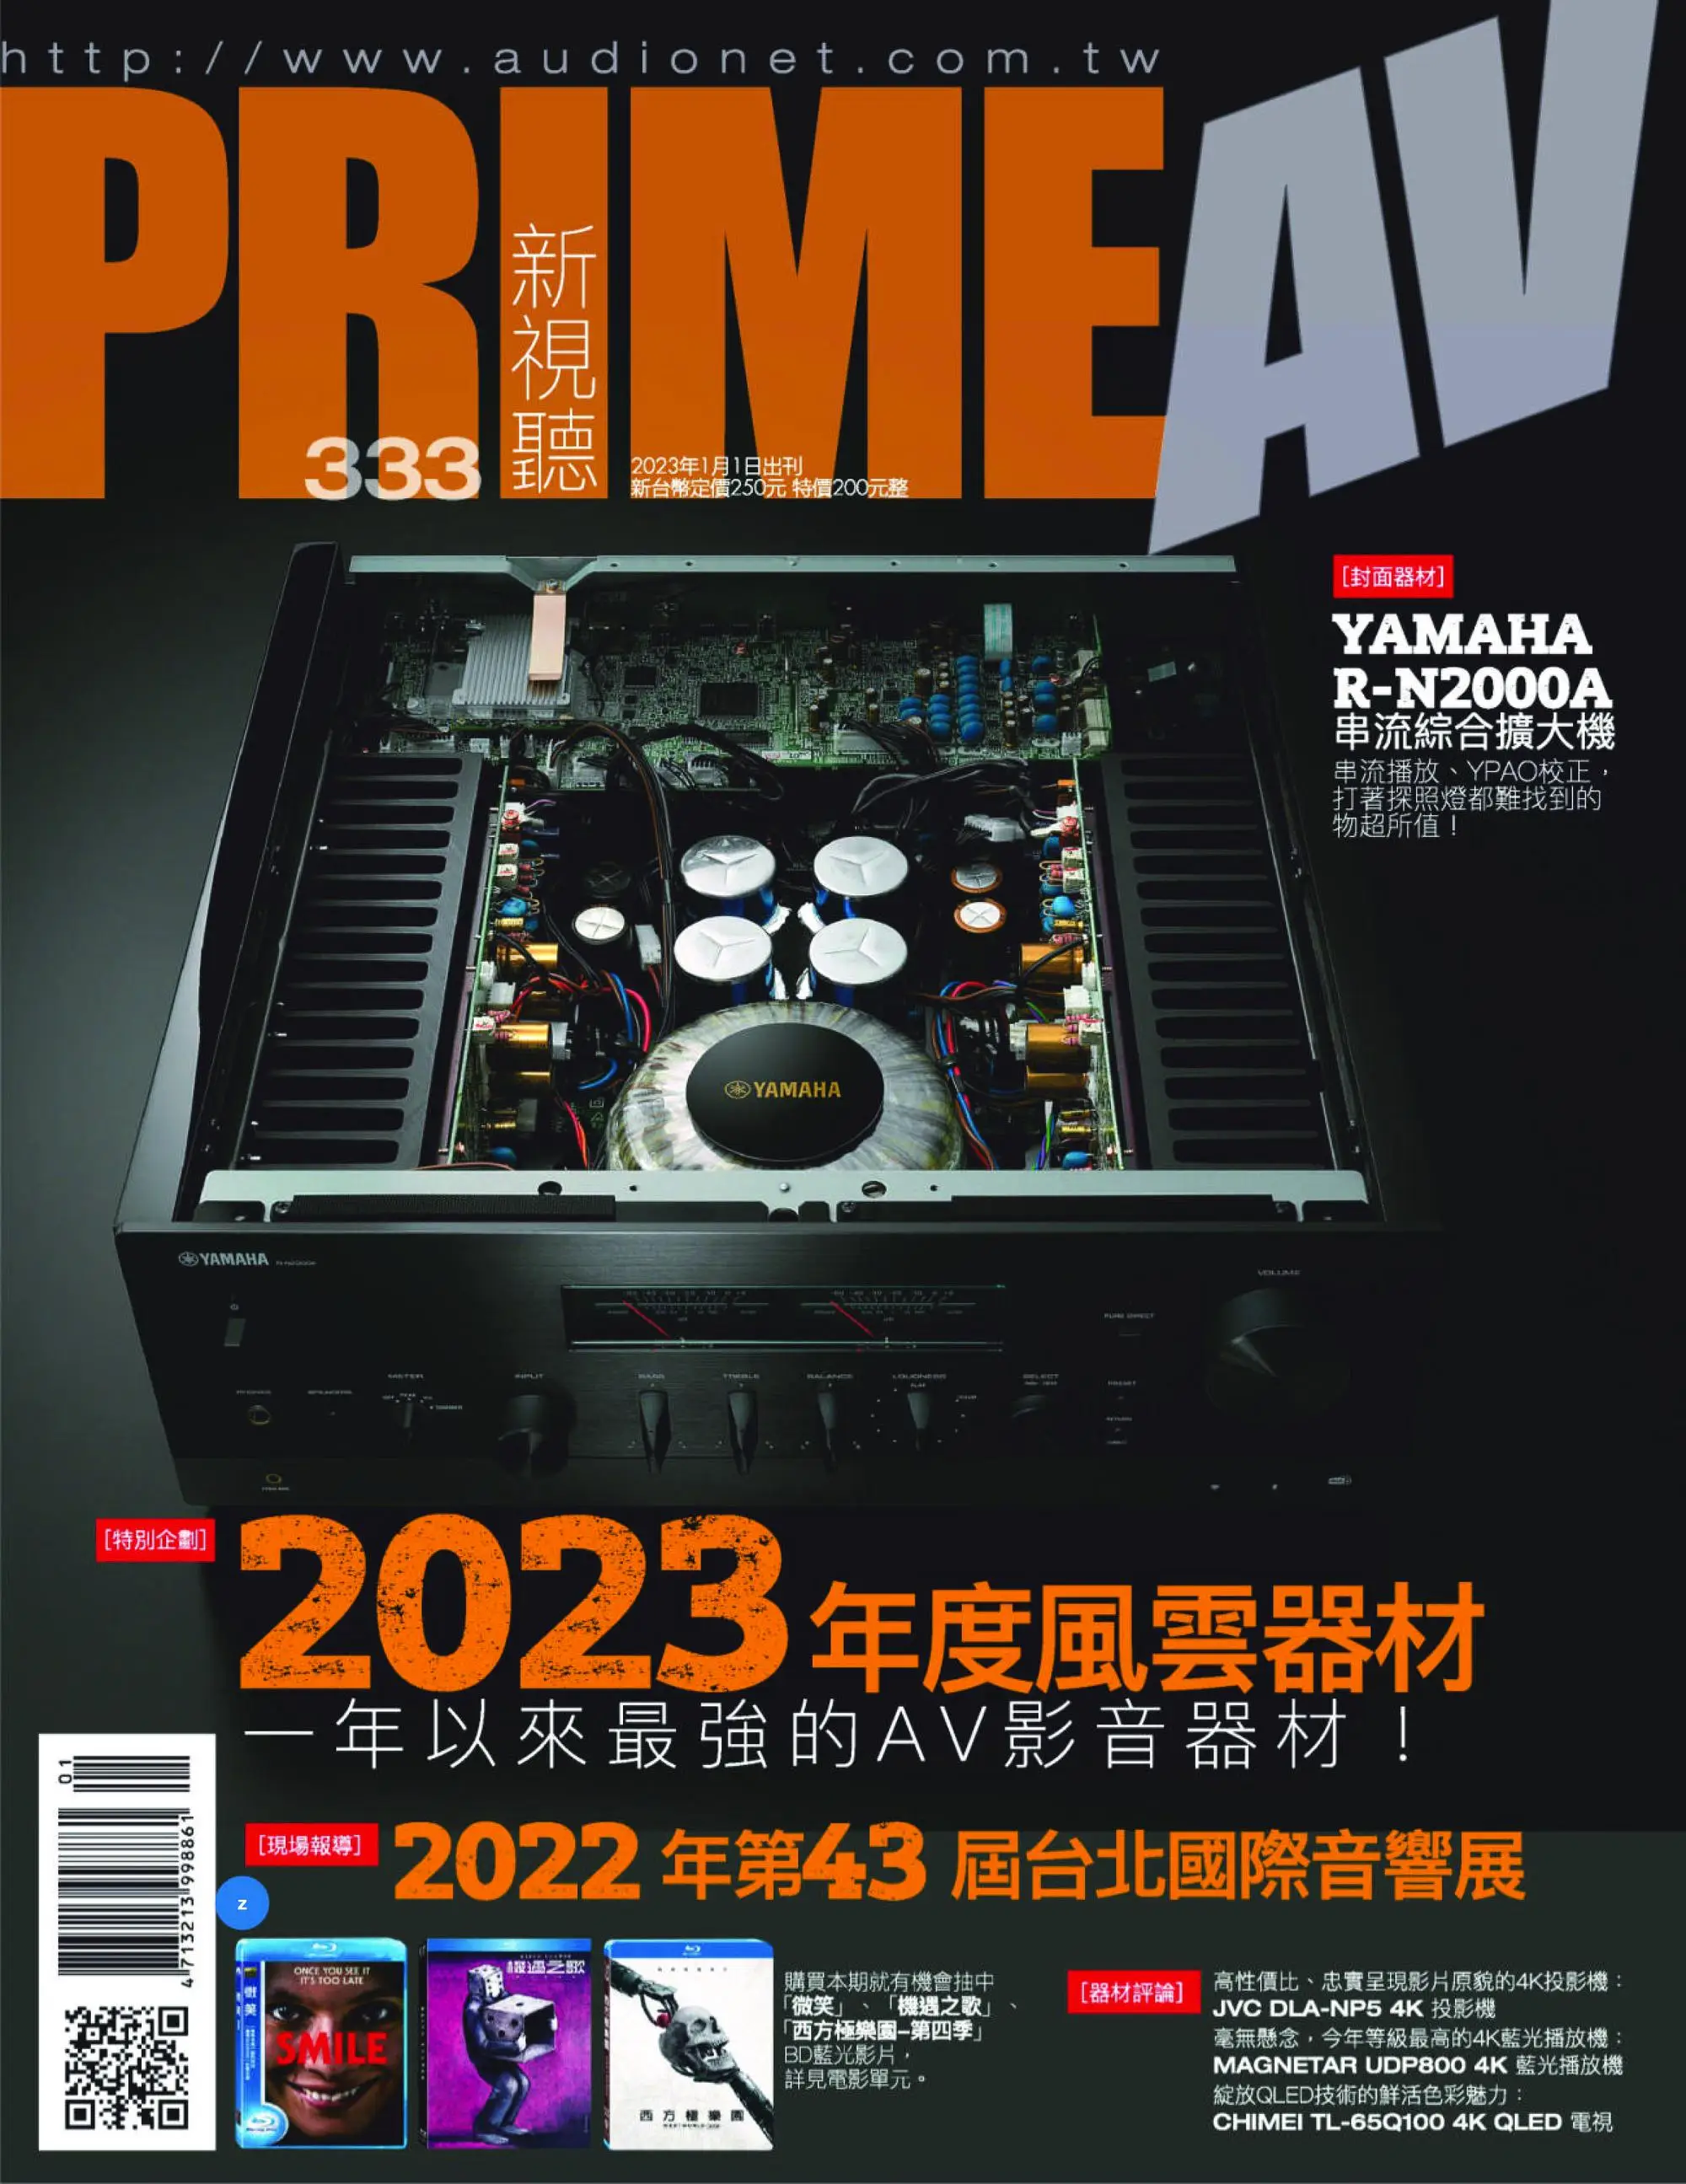 Prime AV 新視聽 2023年1月